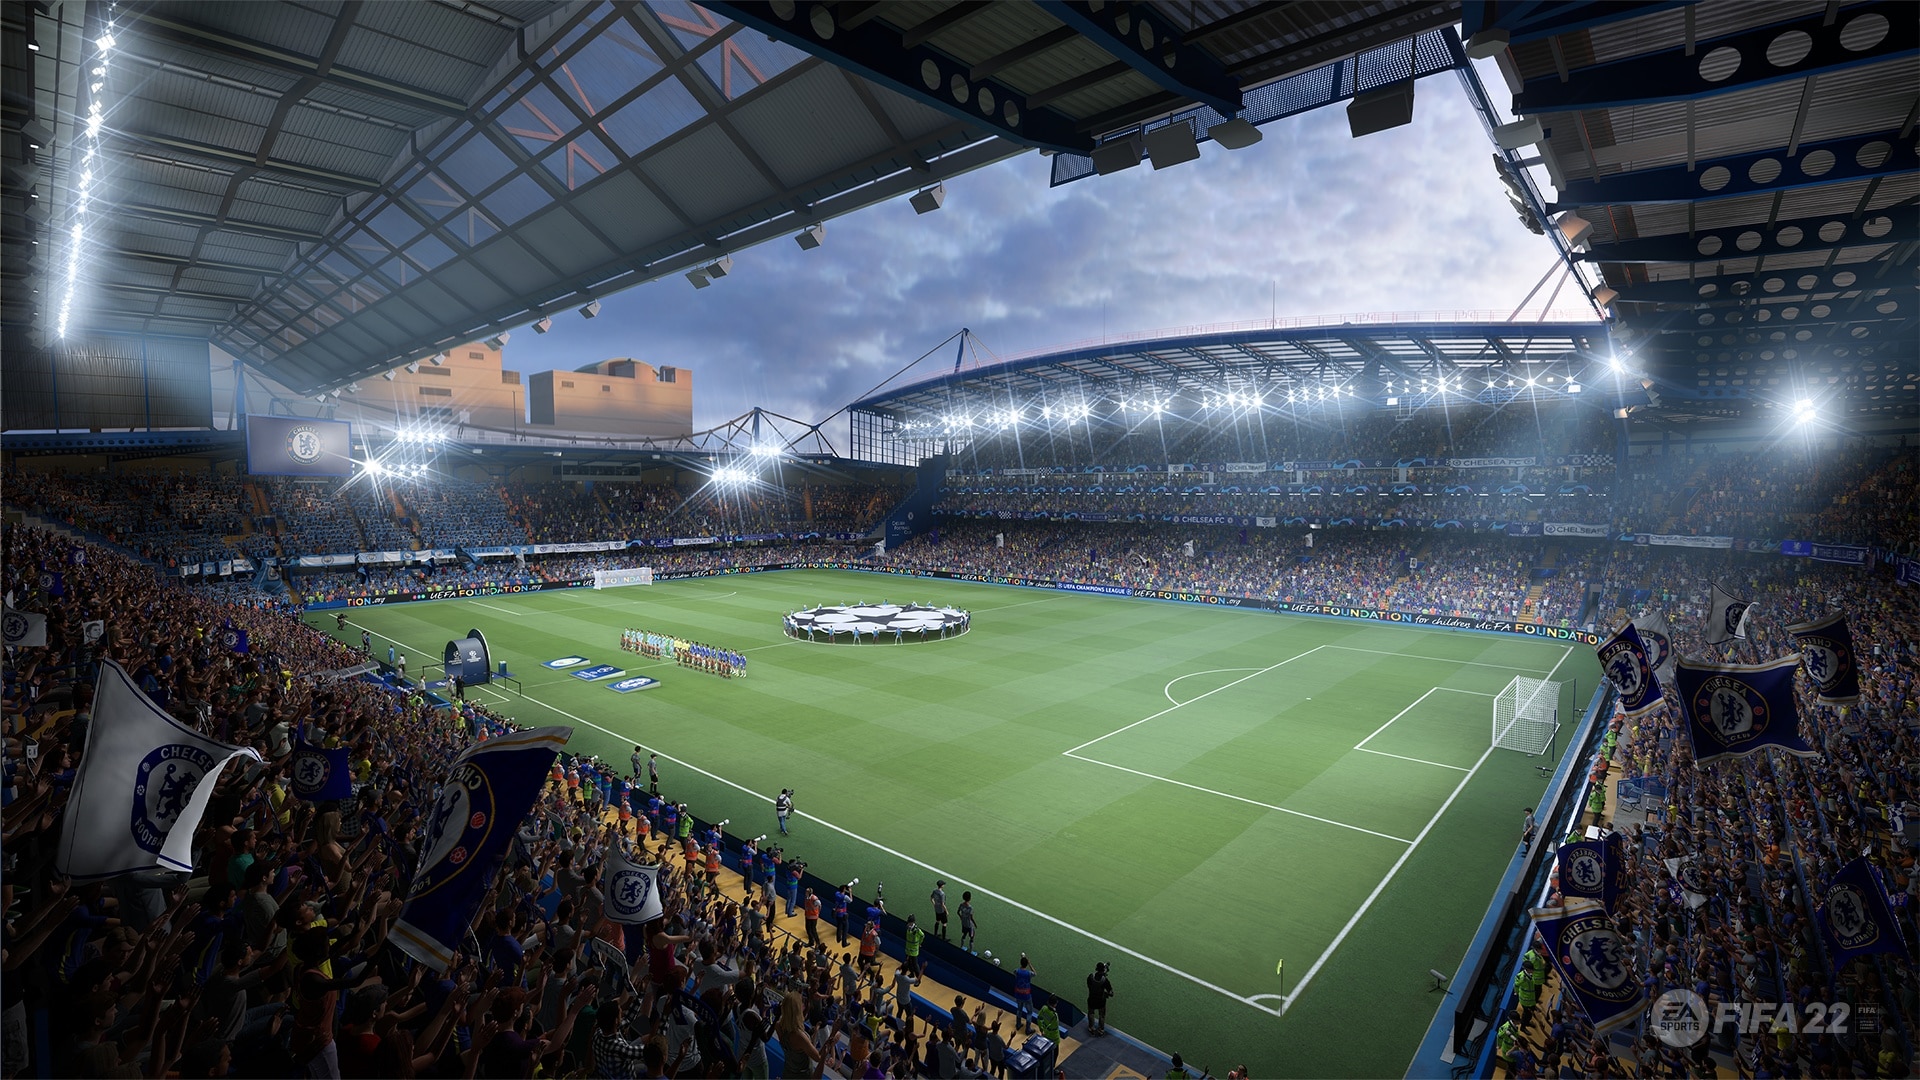 W FIFA 22 ponownie pojawiło się wiele licencjonowanych stadionów. Tutaj widzimy Stamford Bridge. Rodzinny teren Chelsea FC